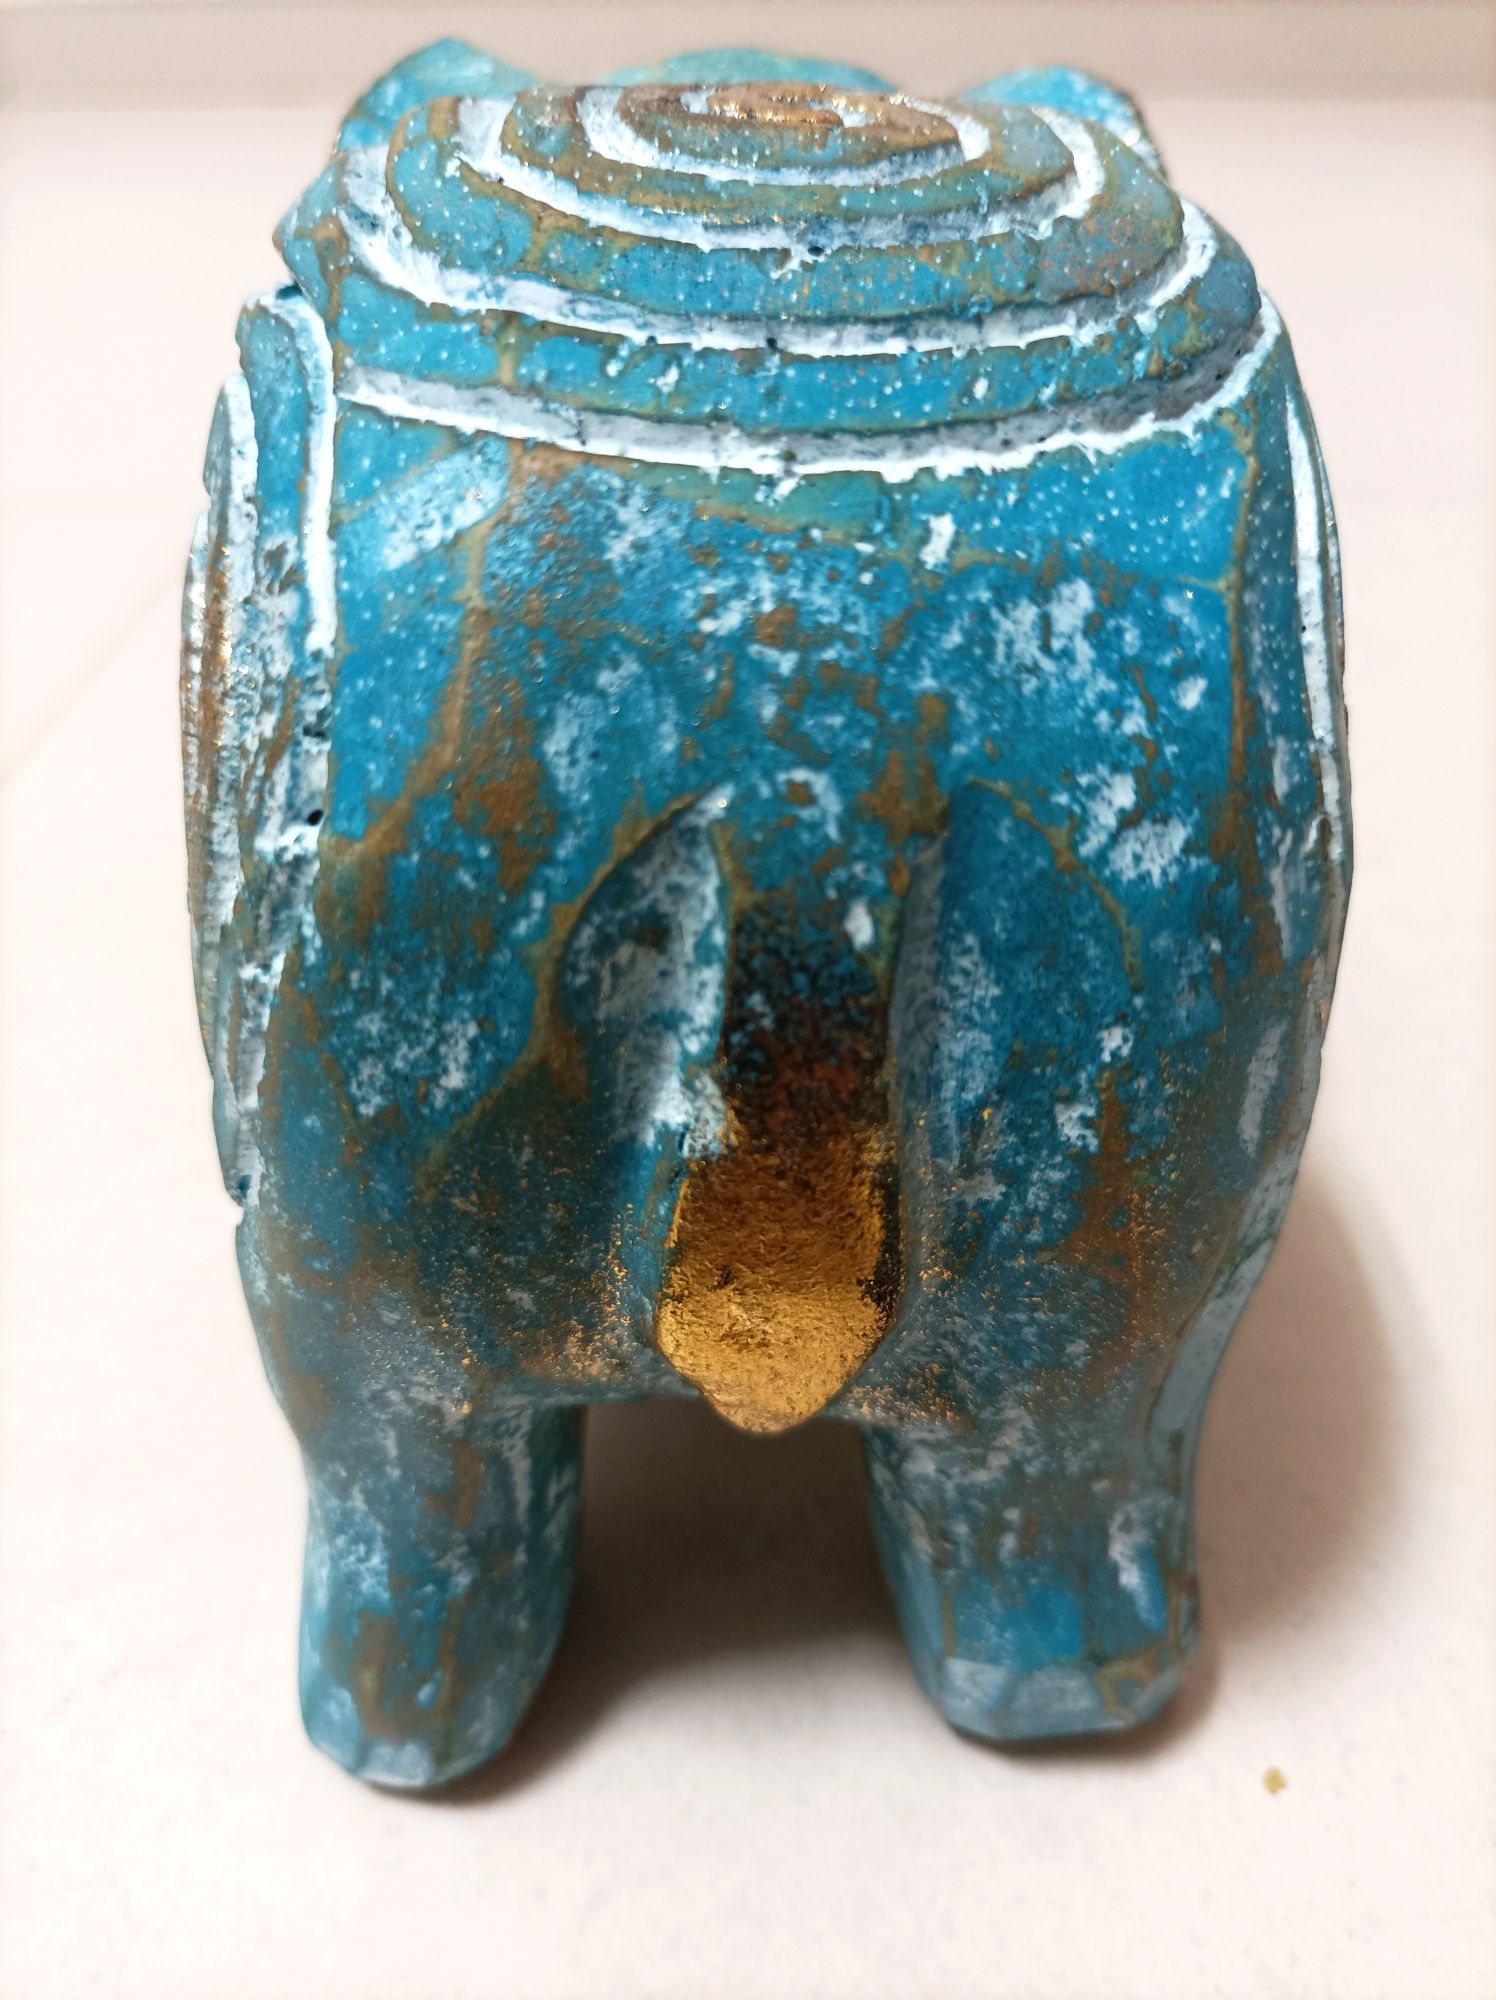 Estatueta de Elefante Azul em Madeira